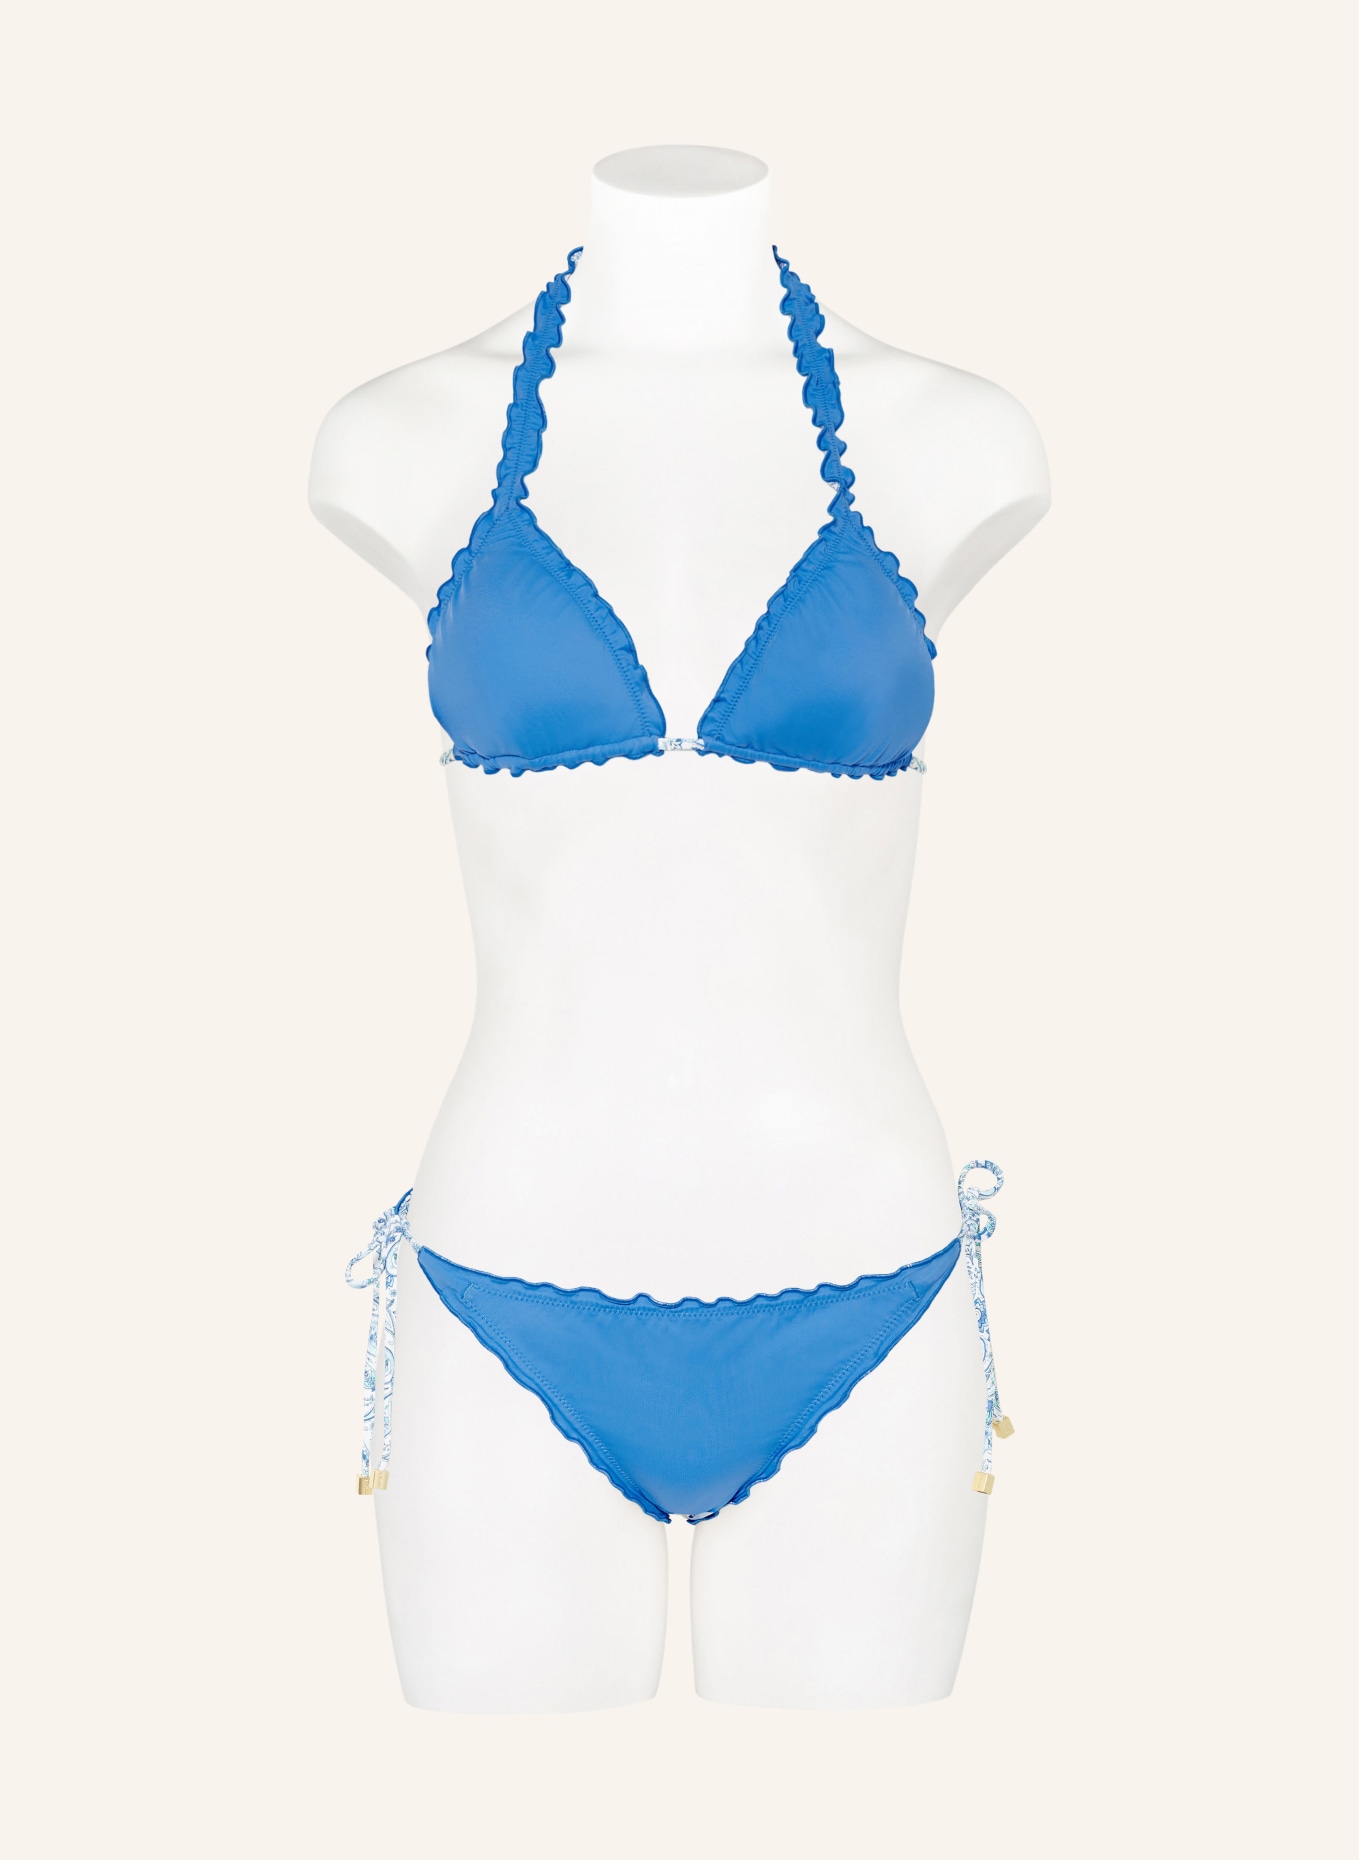 heidi klein Triangel-Bikini-Top CAMPS BAY BEACH zum Wenden, Farbe: WEISS/ BLAU/ TÜRKIS (Bild 4)